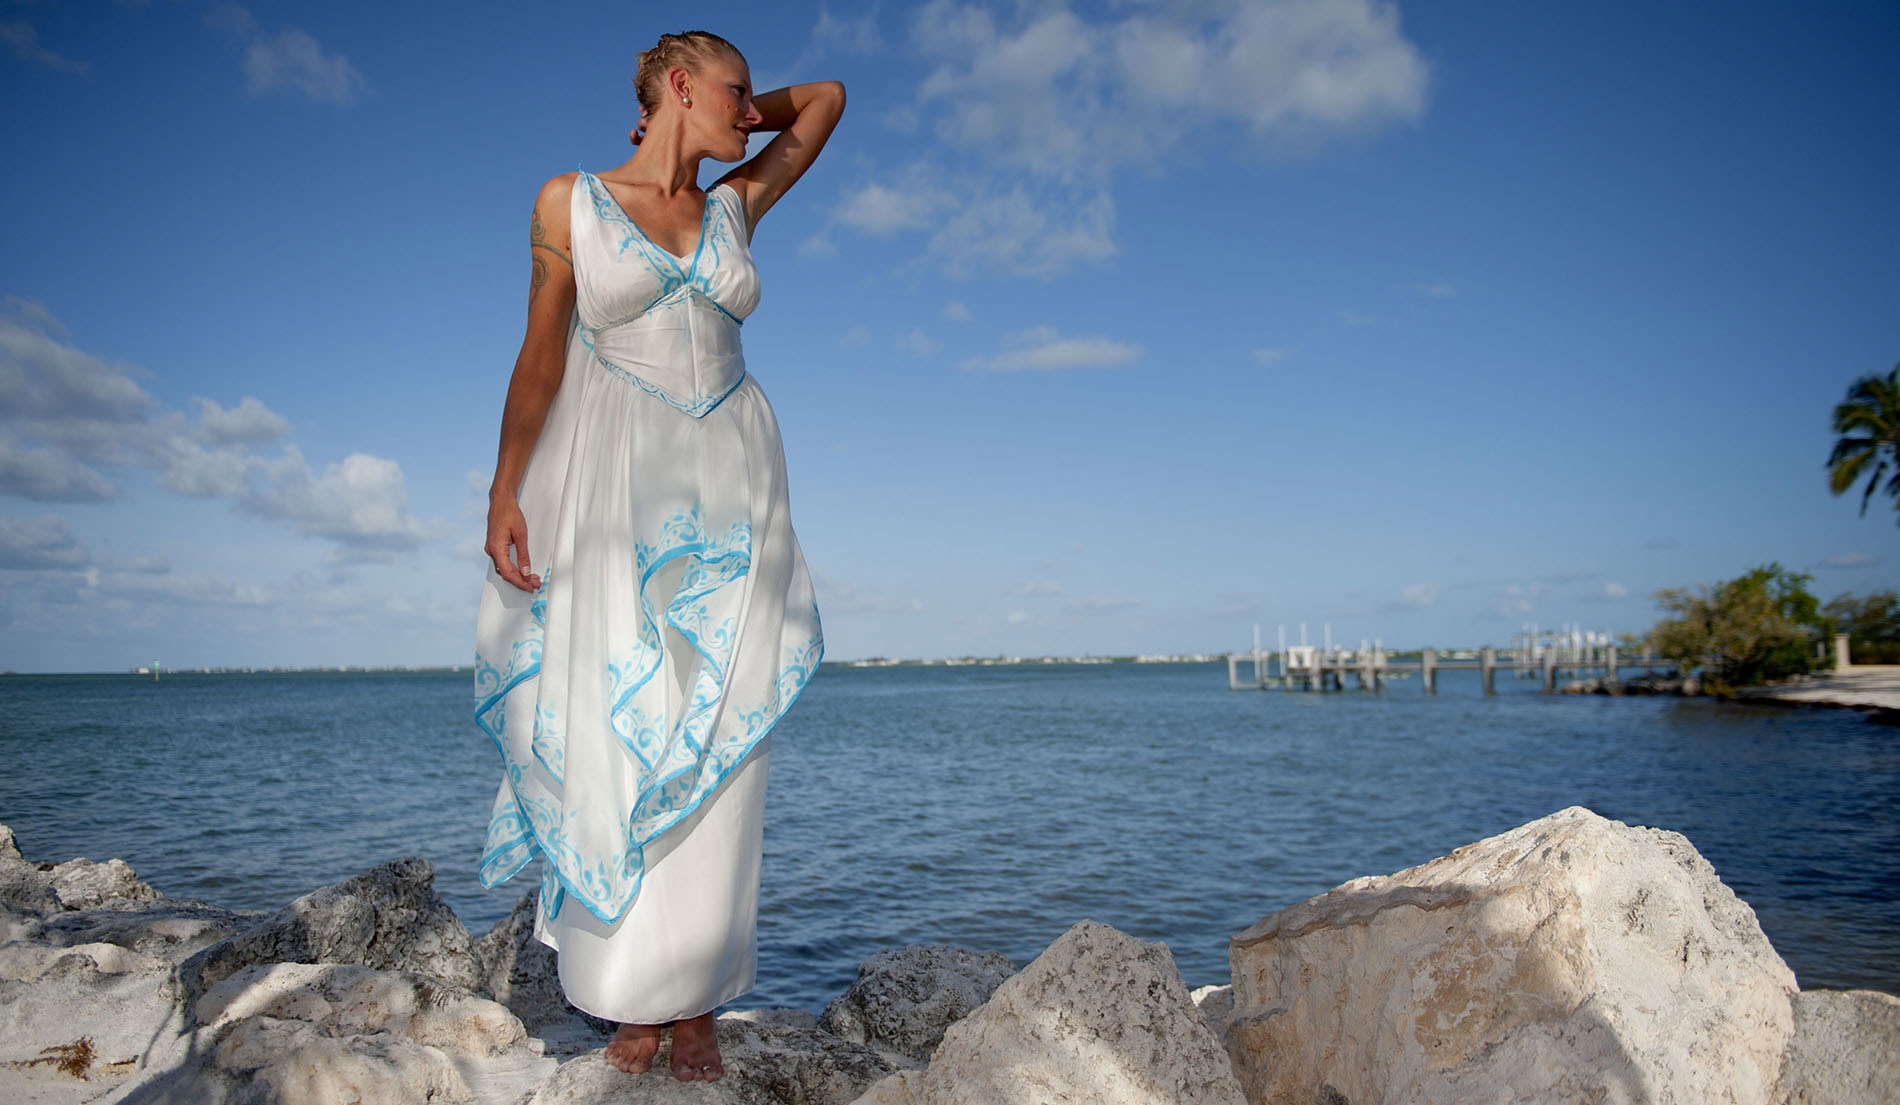 Defined Waist Bohemian Beach Wedding Dress - Look 3 front